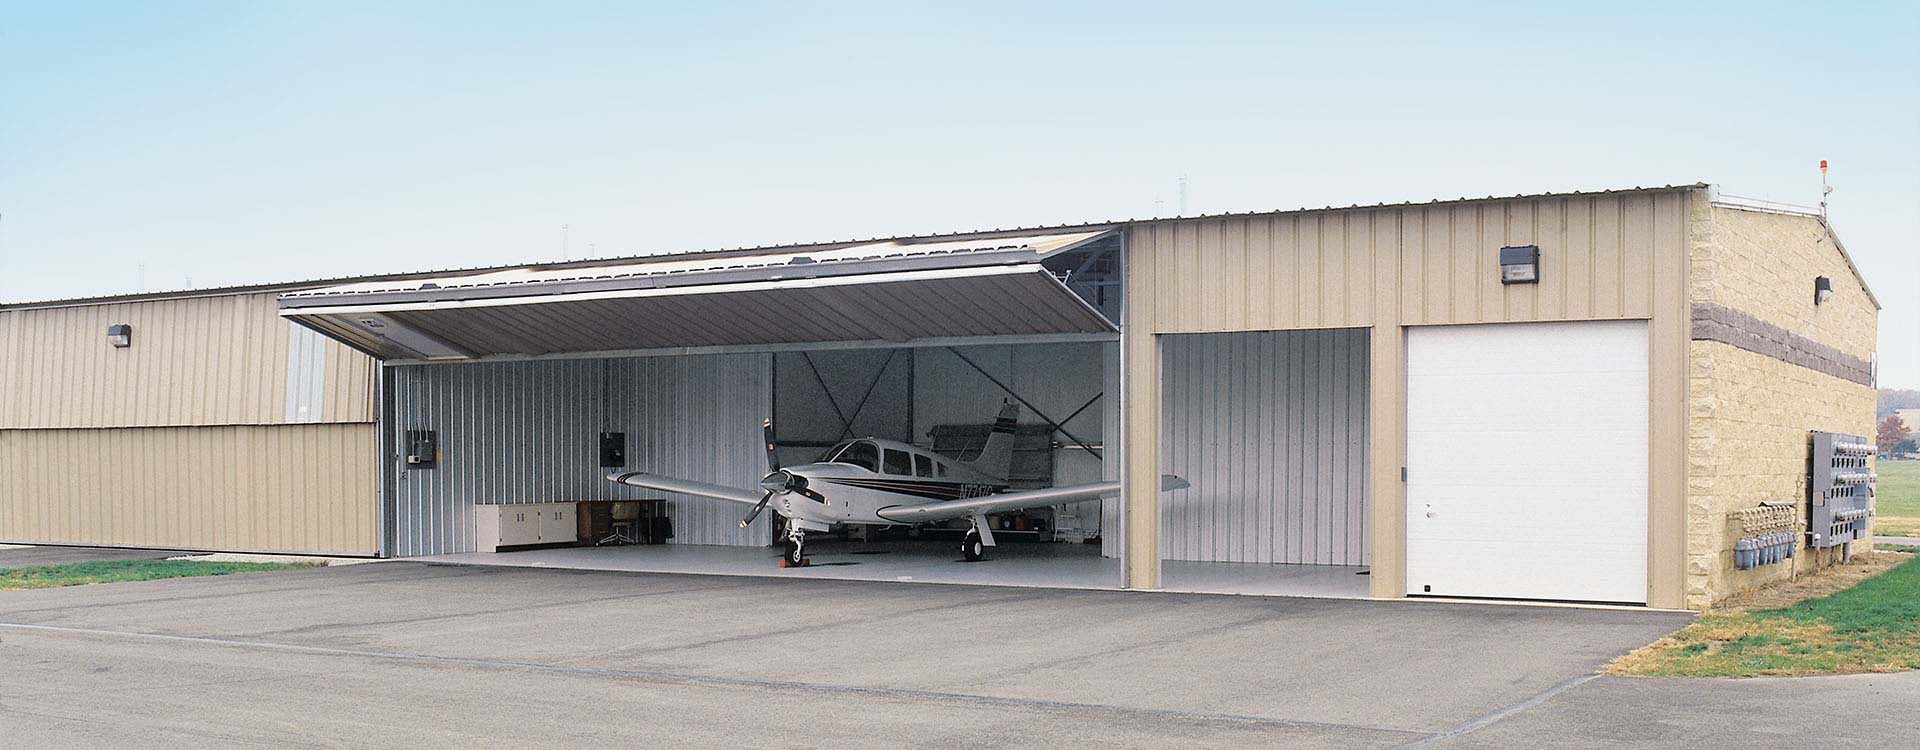 bifold hangar door